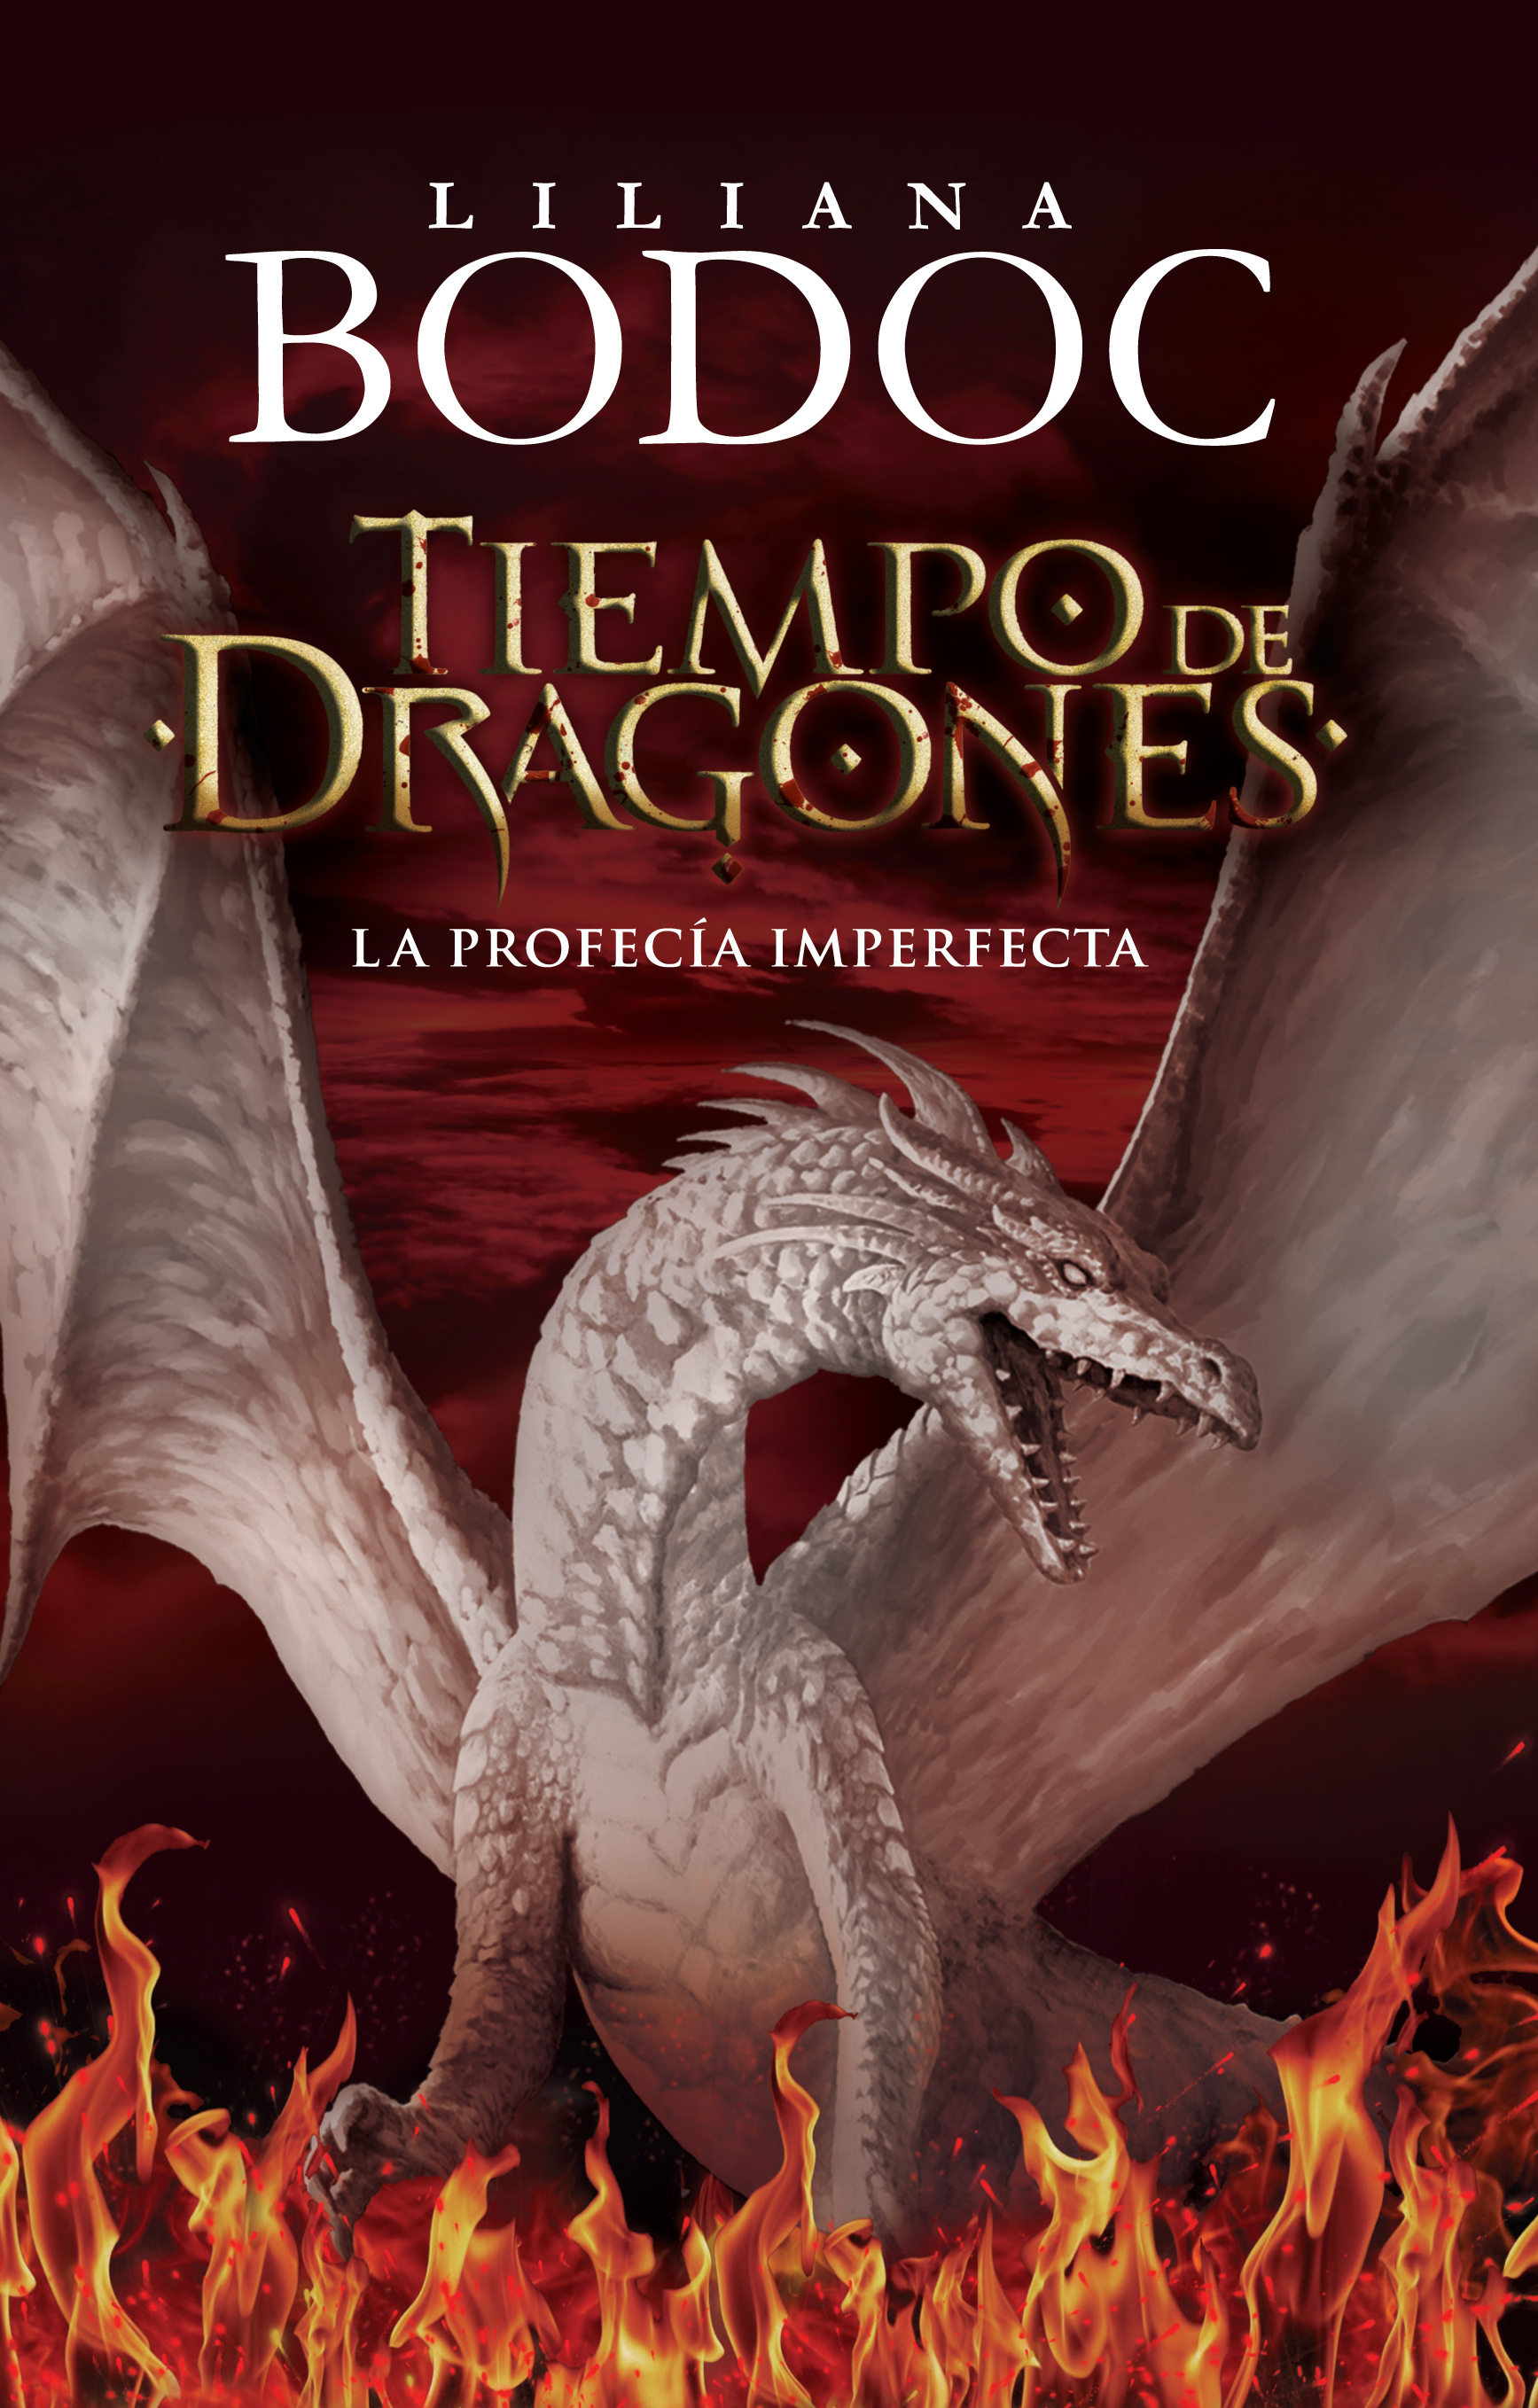 The cover of Tiempo de dragones: la profecía imperfecta, by Liliana Bodoc.